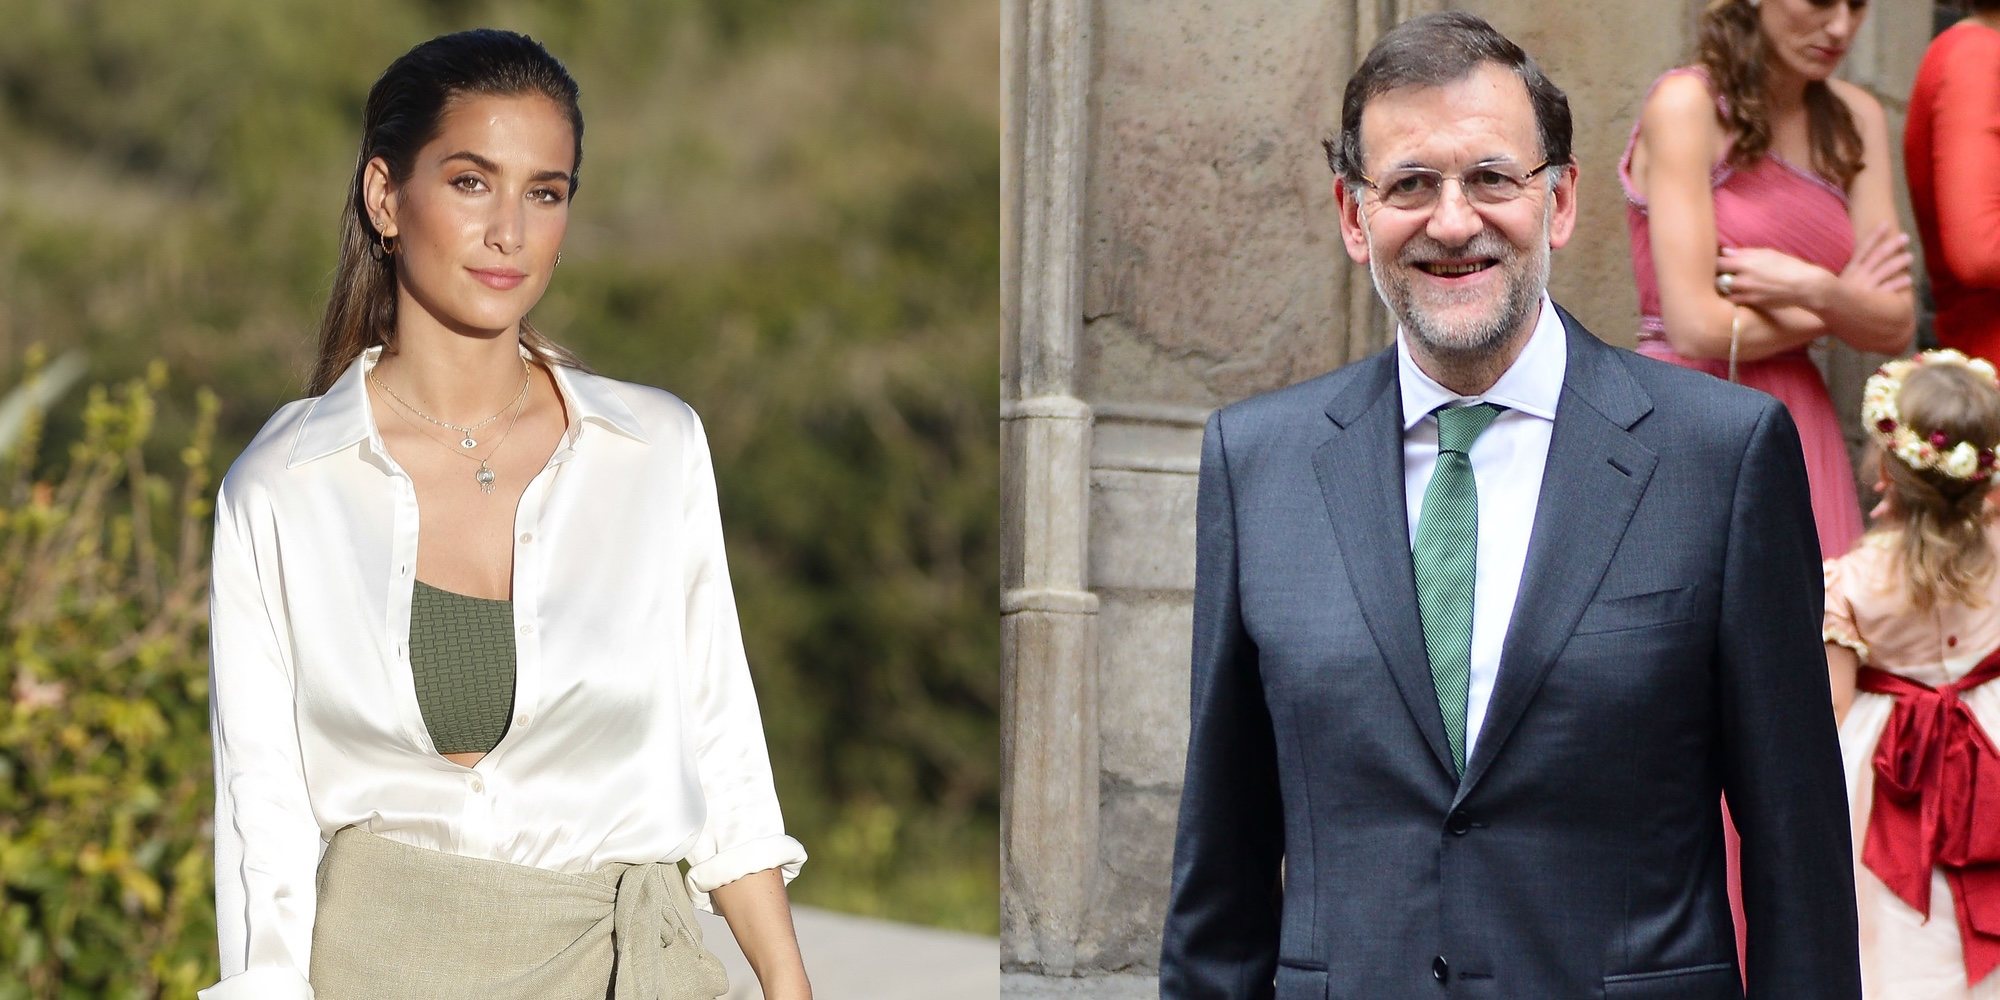 Mariano Rajoy reaparece como invitado sorpresa en la despedida de soltera de la hermana de María Pombo